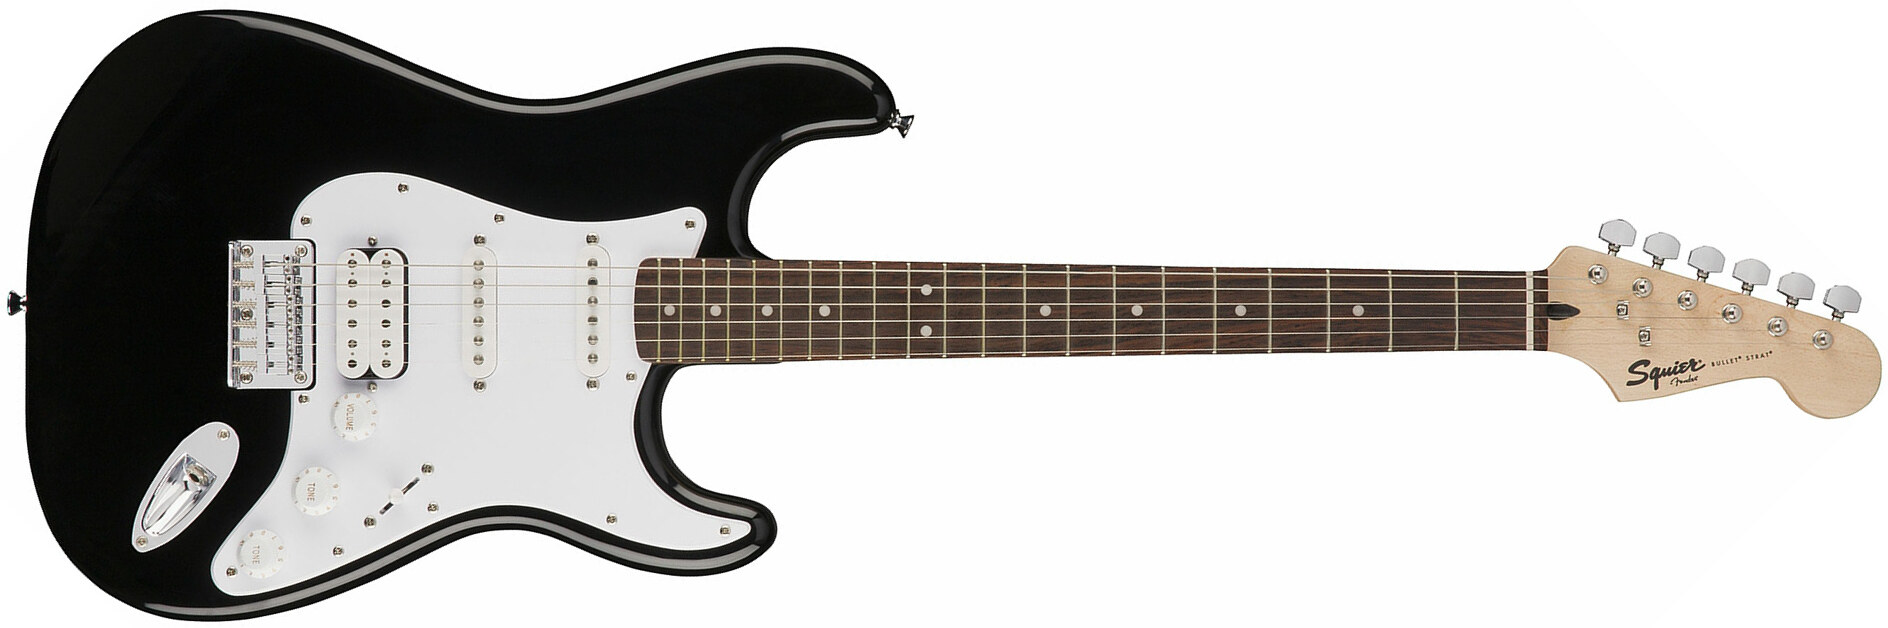 Squier Strat Bullet Ht Hss Rw - Black - Str shape electric guitar - Main picture